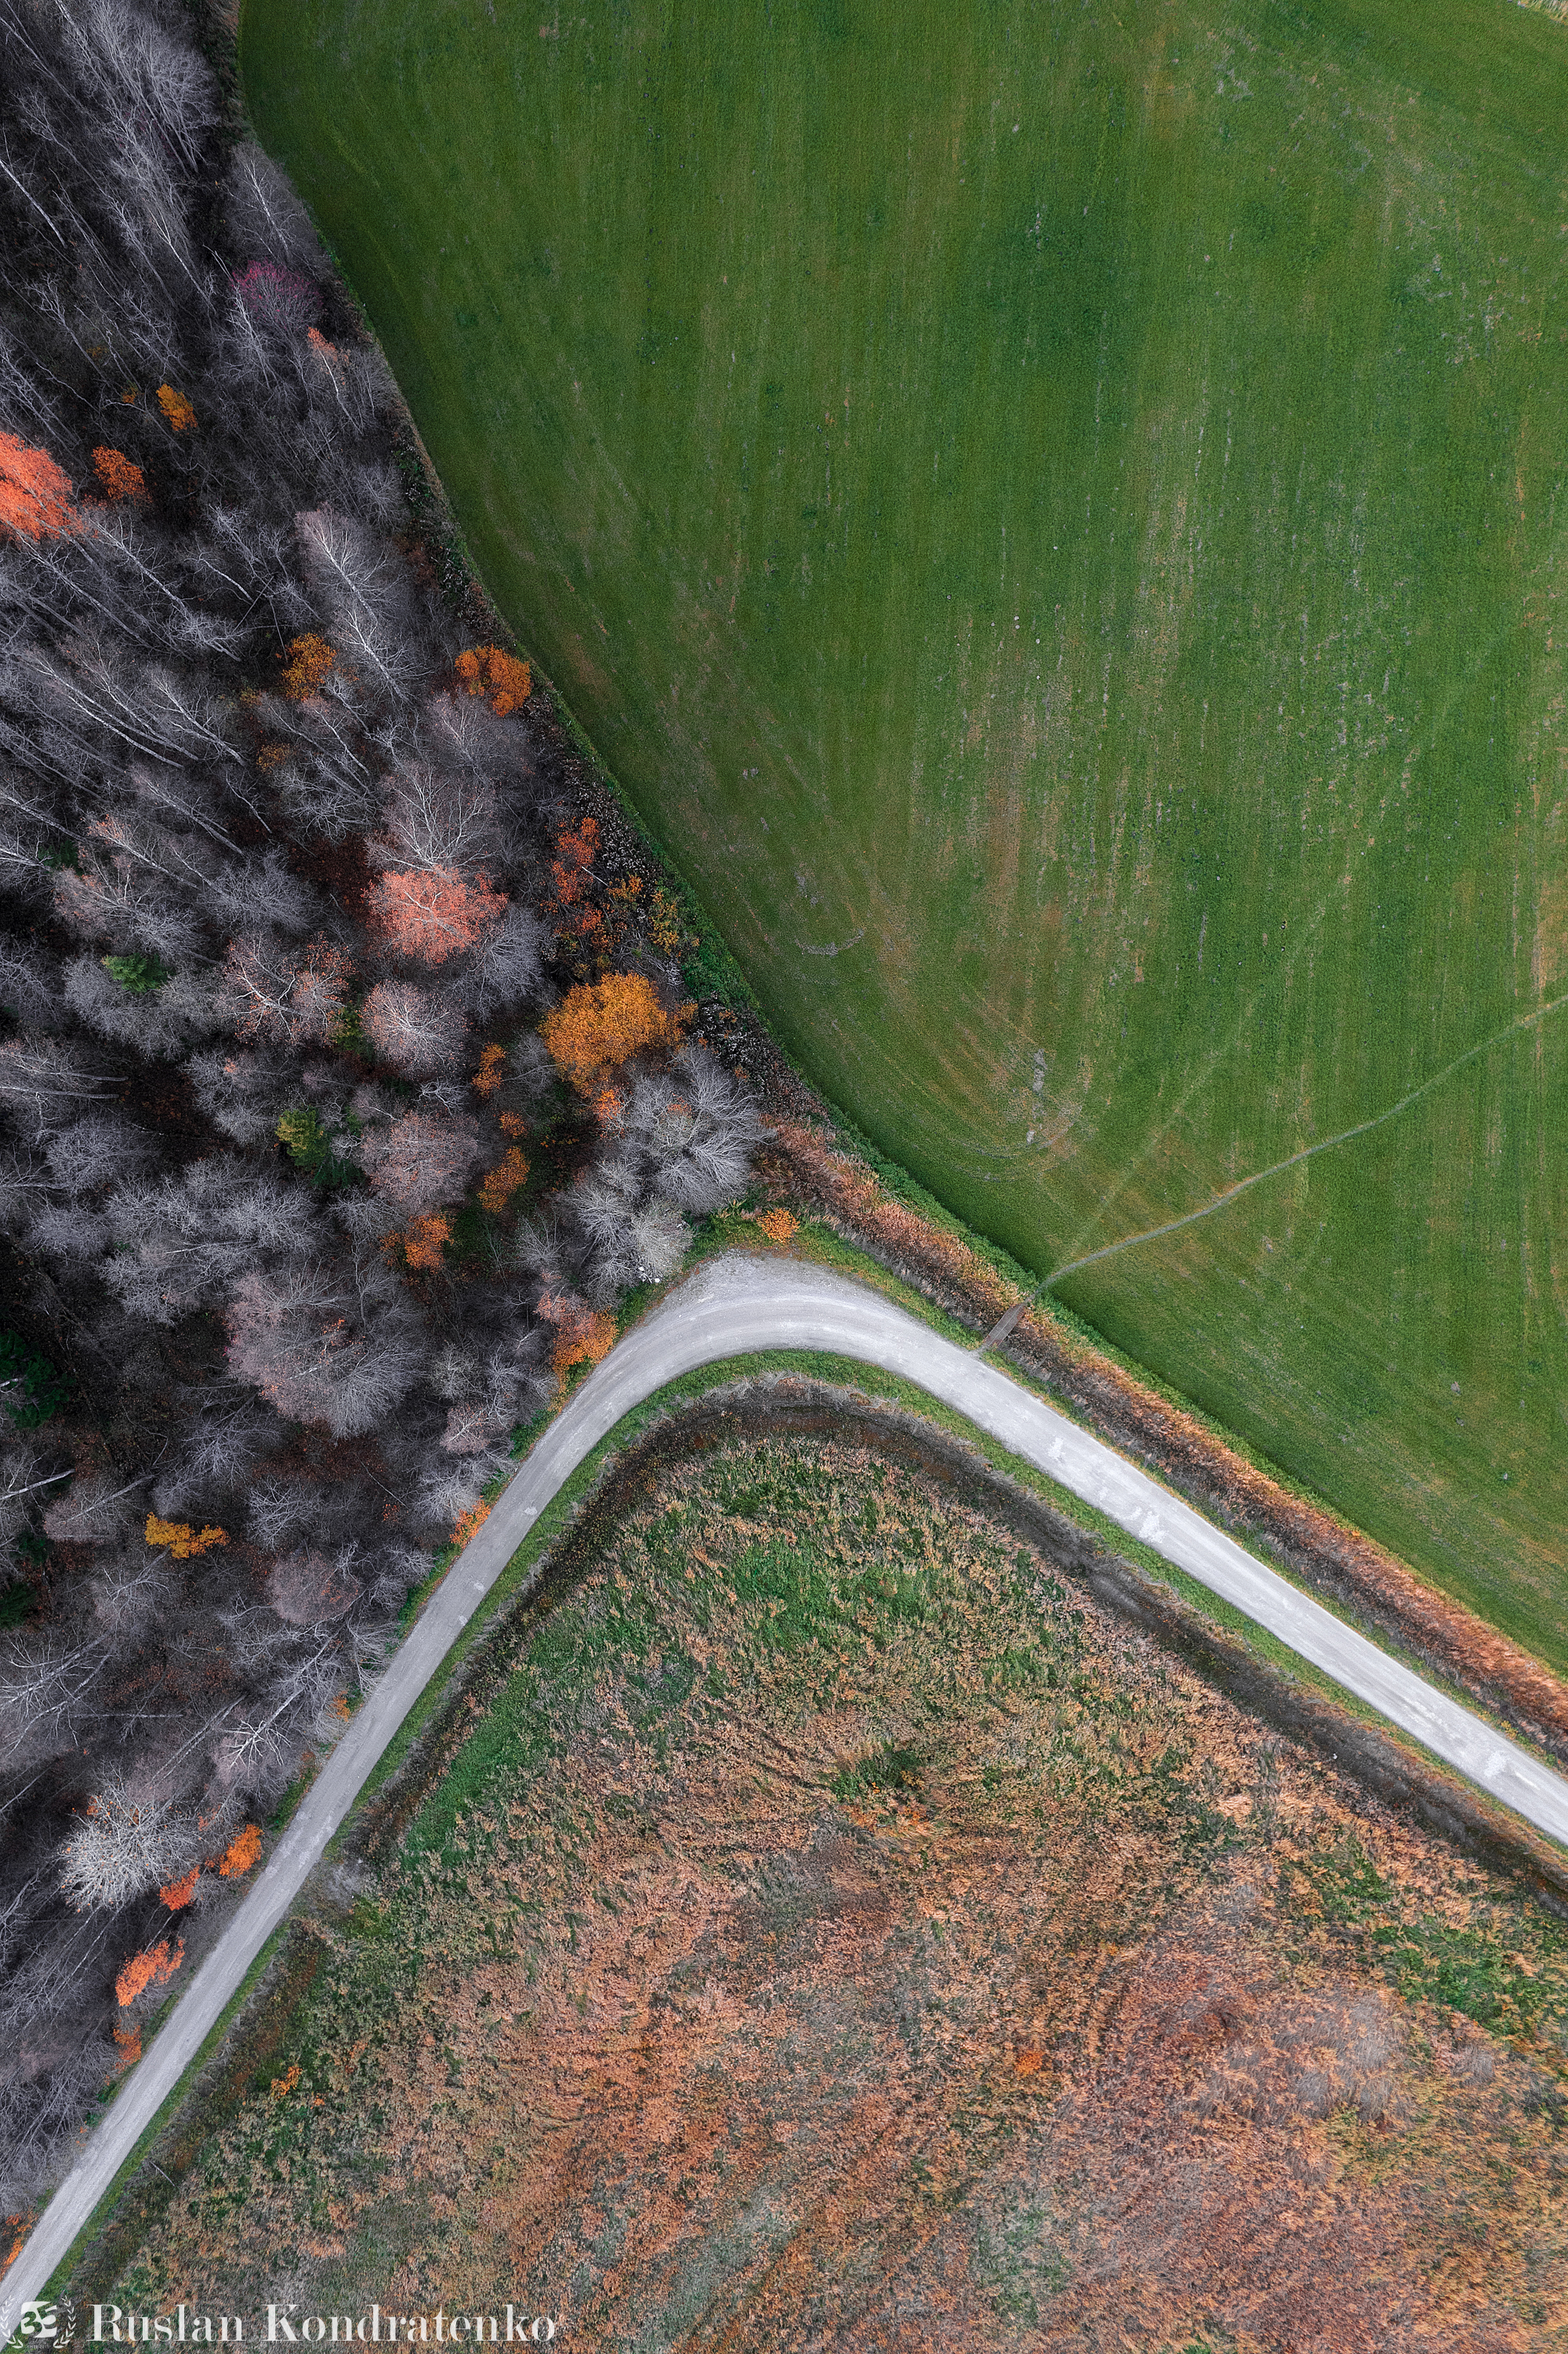 аэрофото, съемка с дрона, аэрофотография, air 2s, аэрофото, Кондратенко Руслан